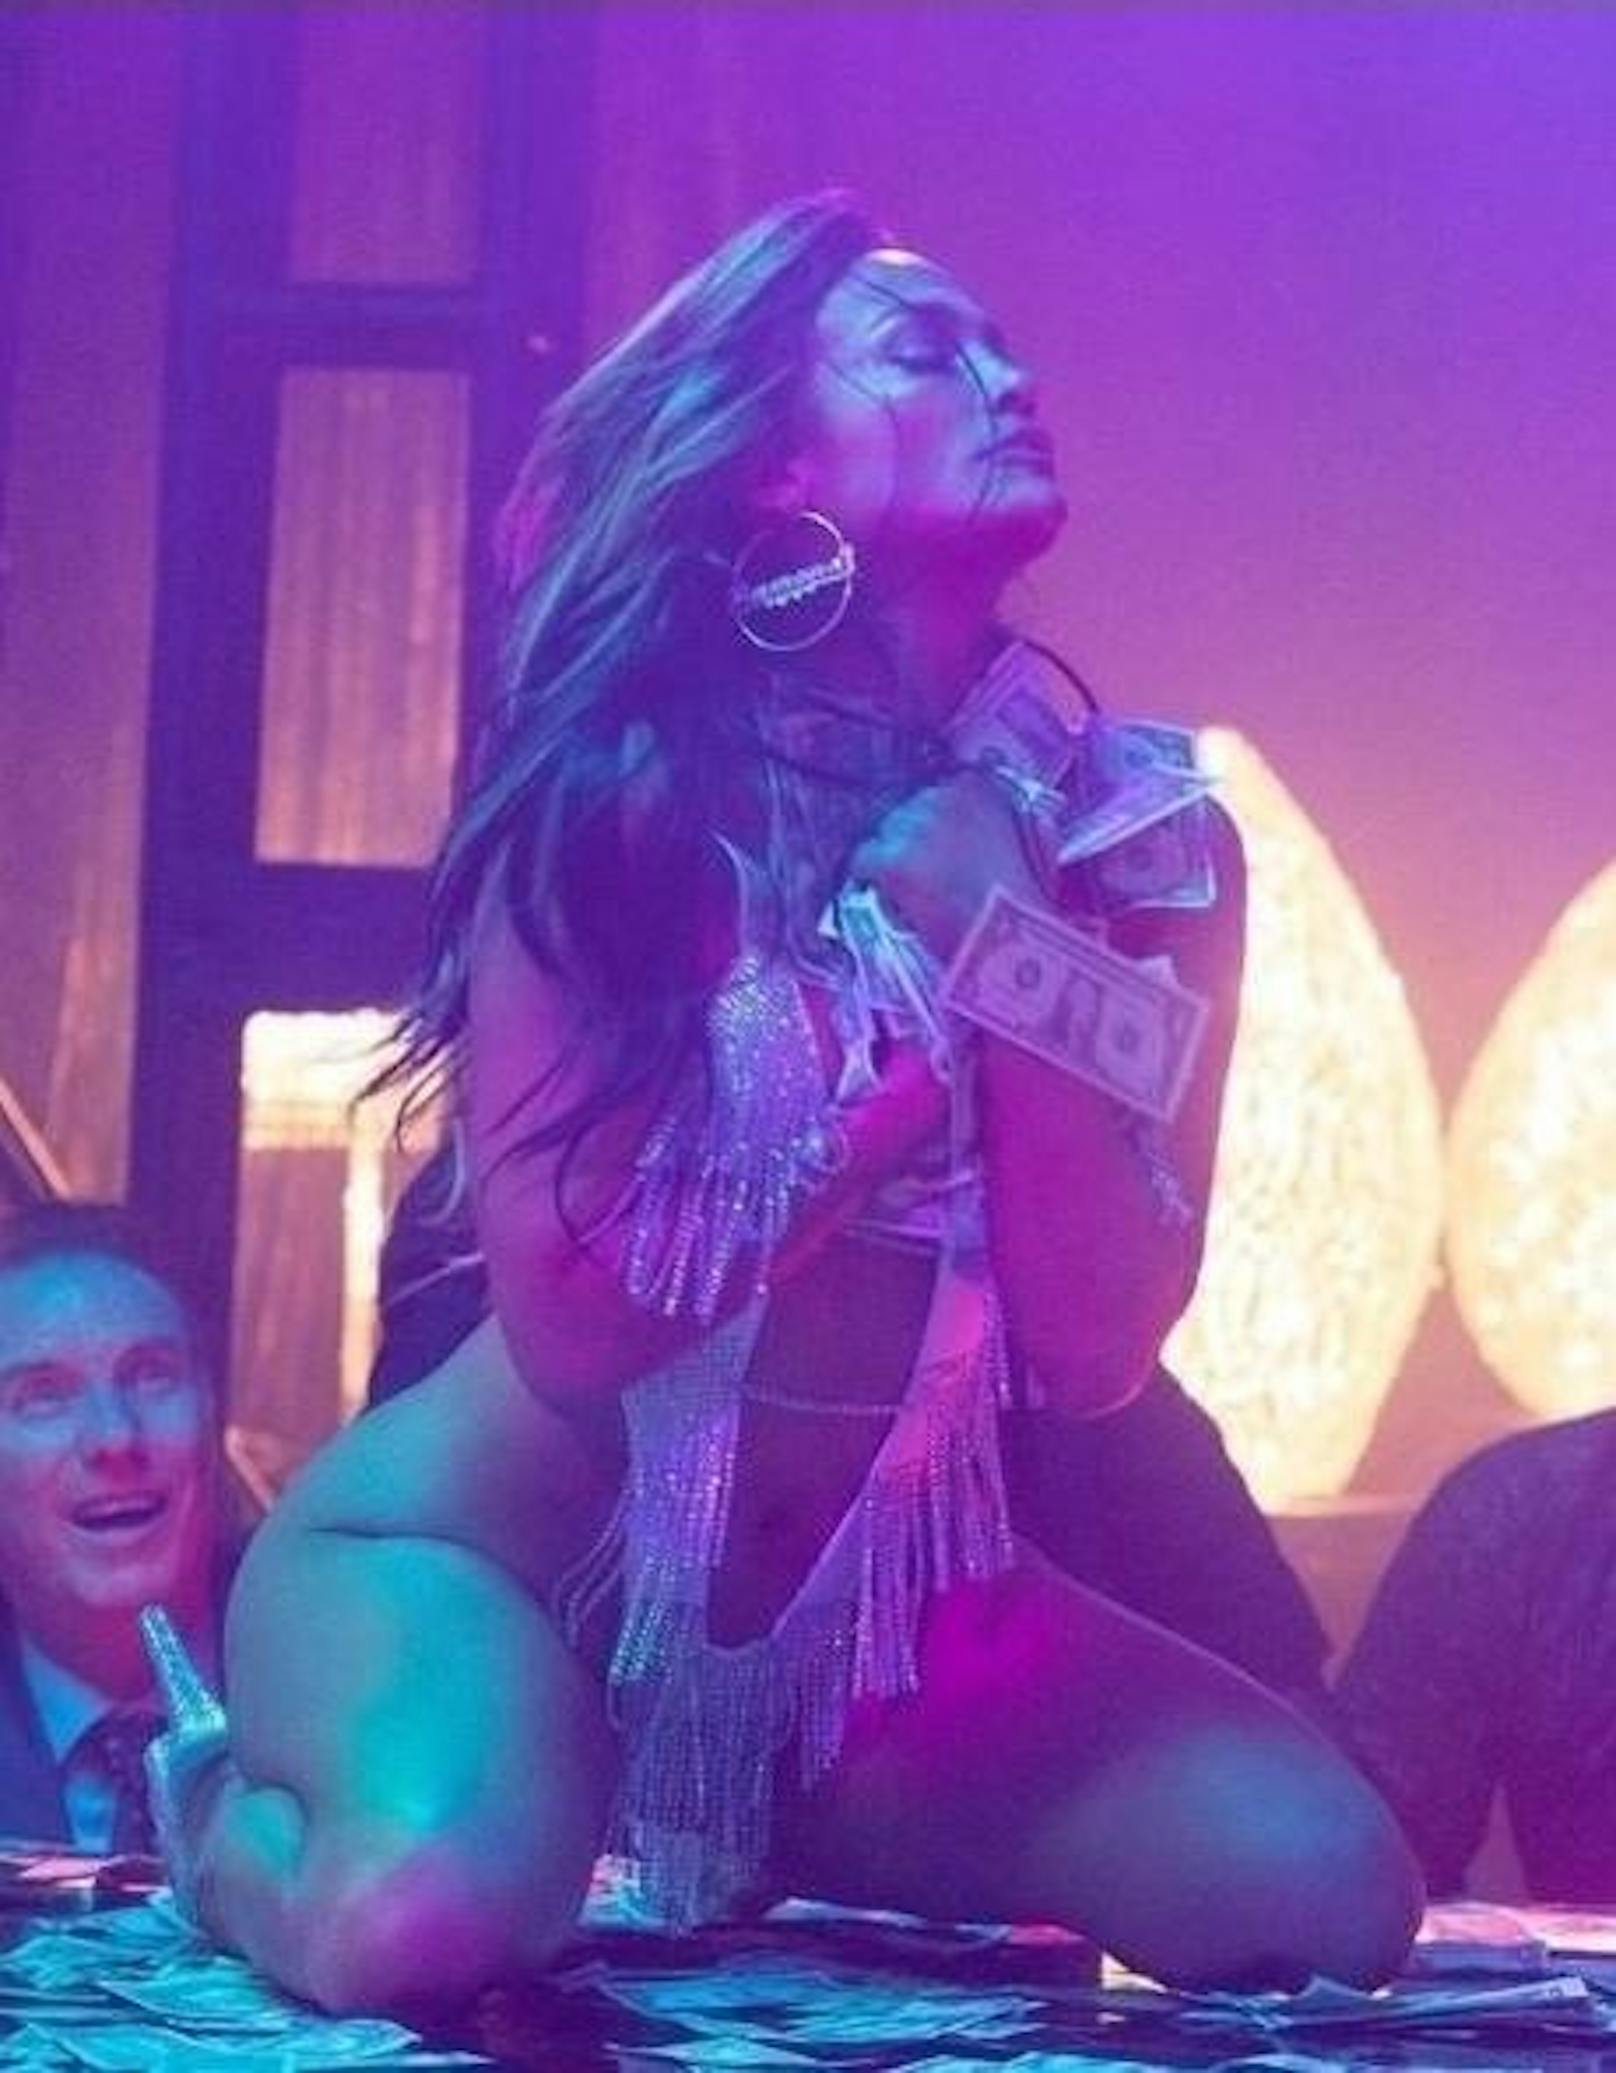 30.08.2019: Oh ja, Wir können den neuen Film mit Jennifer Lopez dank Bilder wie diesem kaum noch erwarten. "Hustlers" heißt der Streifen, in dem JLo eine Stripperin spielen wird.